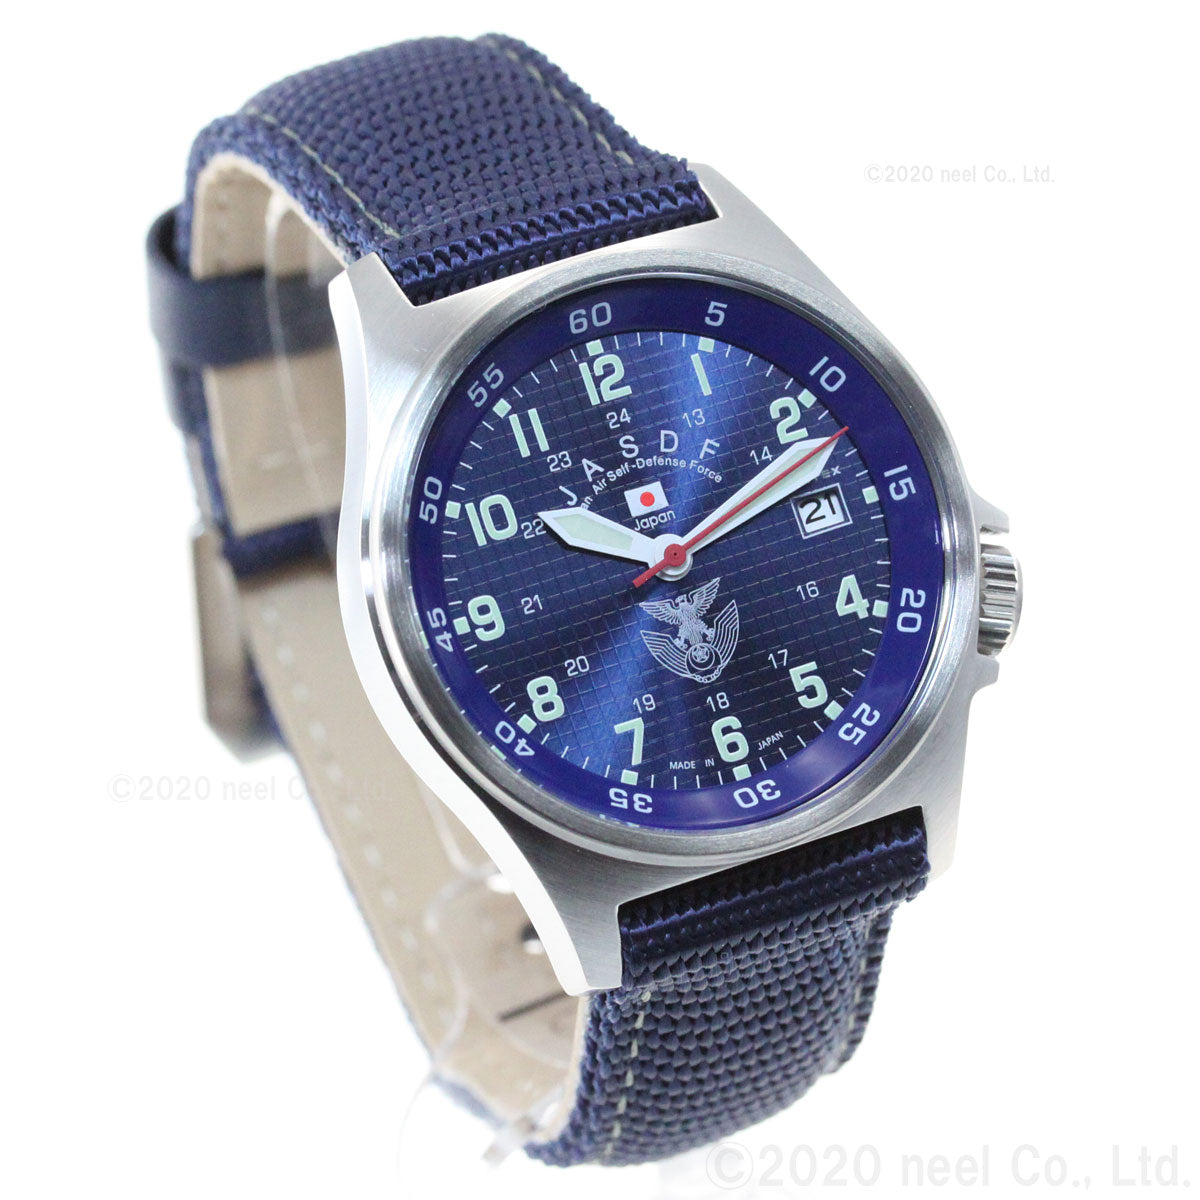 KENTEX ケンテックス 腕時計 メンズ JSDF スタンダード 自衛隊モデル 航空自衛隊 ナイロンバンド S455M-02【正規品】